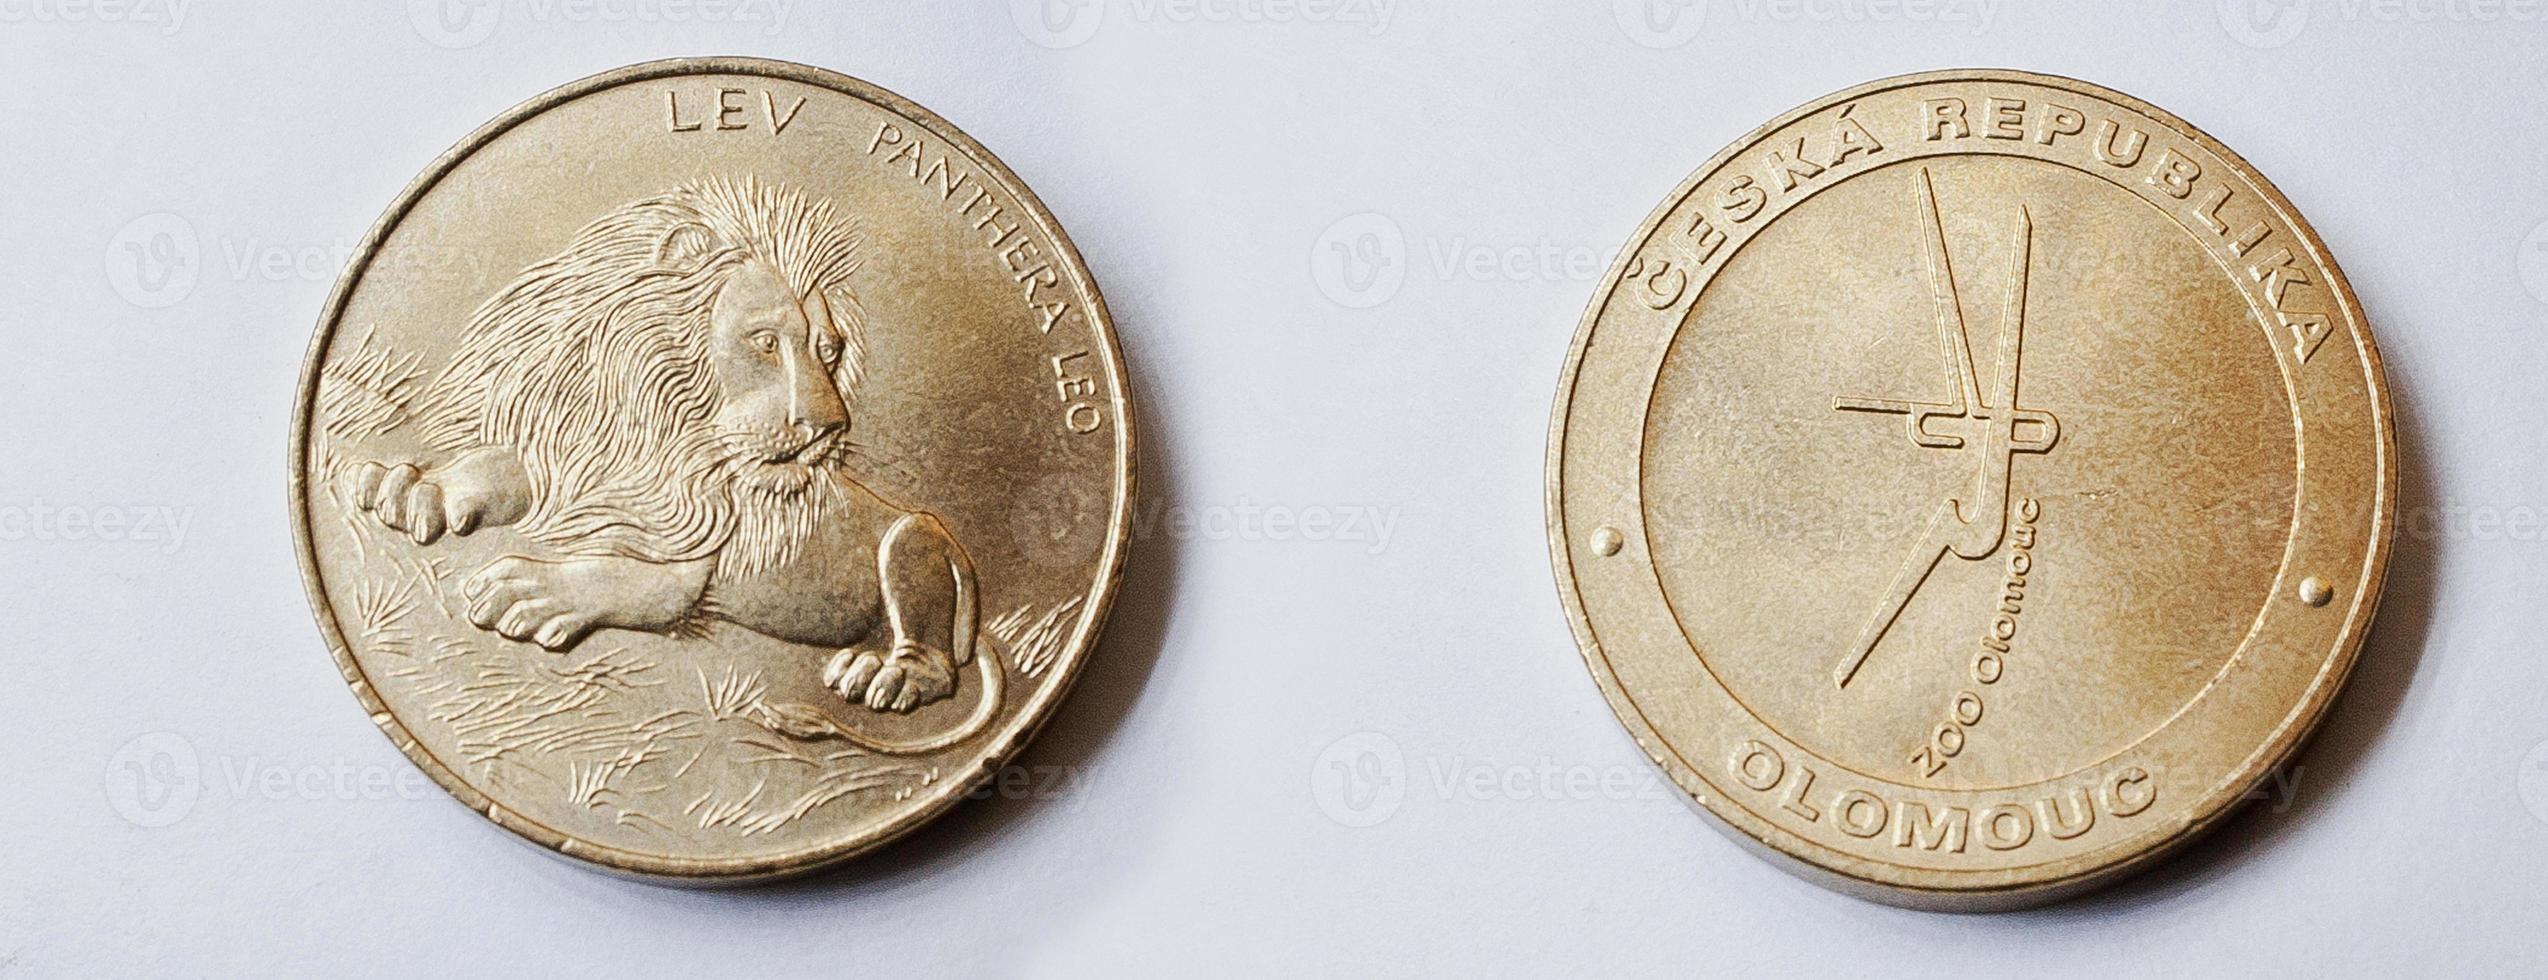 conjunto de moneda corona república checa muestra león del zoológico de olomouc foto